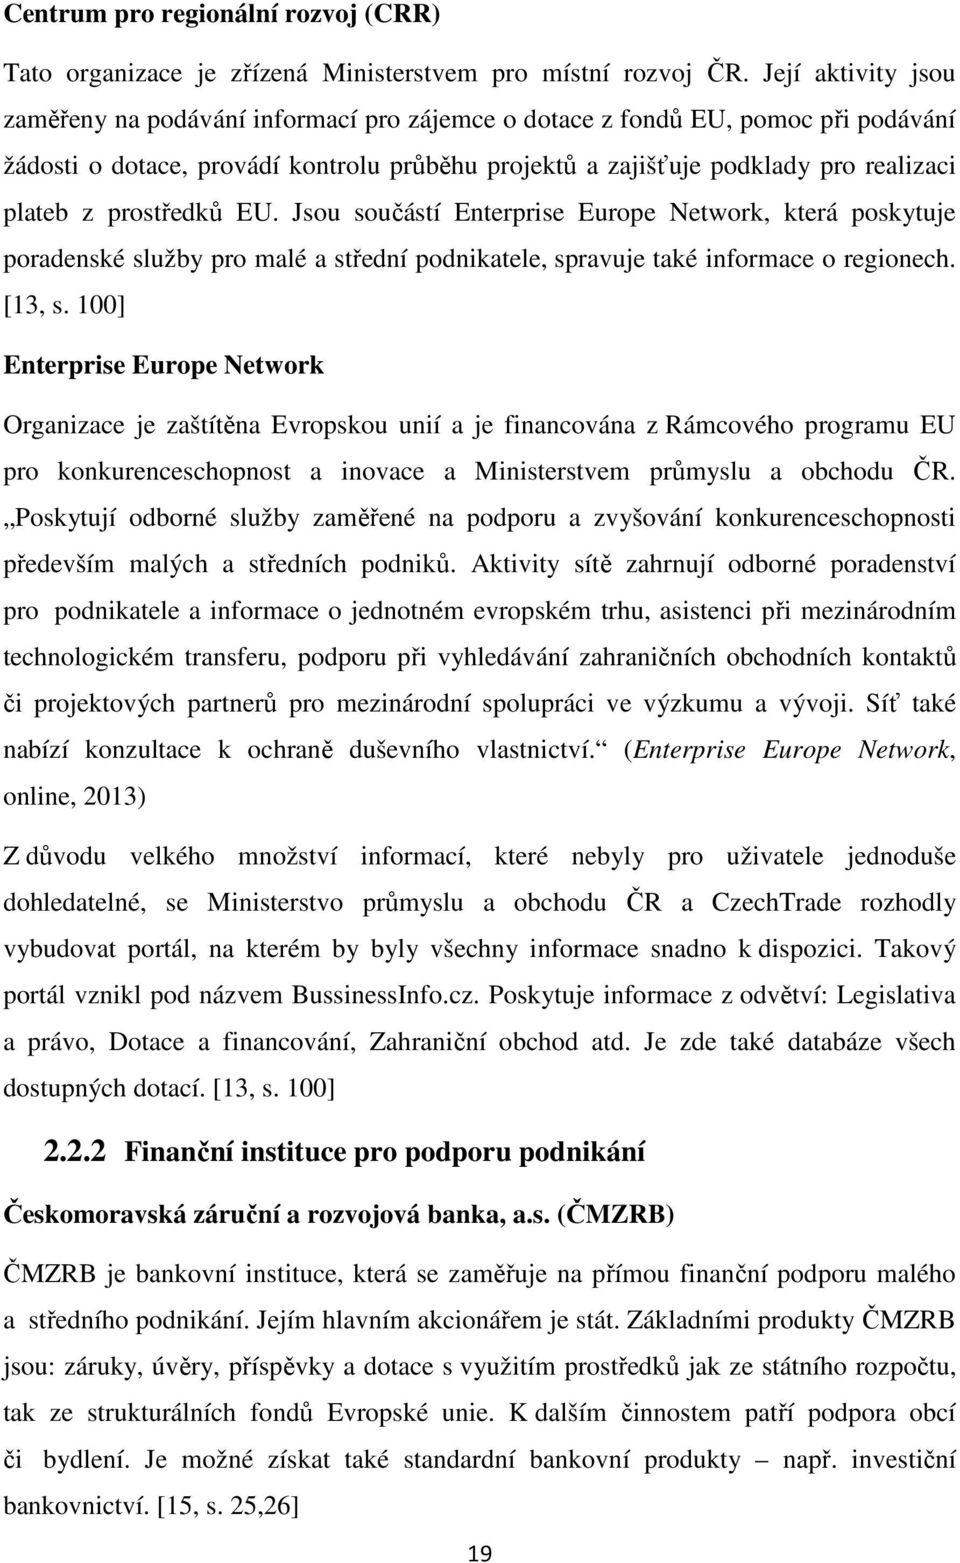 prostředků EU. Jsou součástí Enterprise Europe Network, která poskytuje poradenské služby pro malé a střední podnikatele, spravuje také informace o regionech. [13, s.